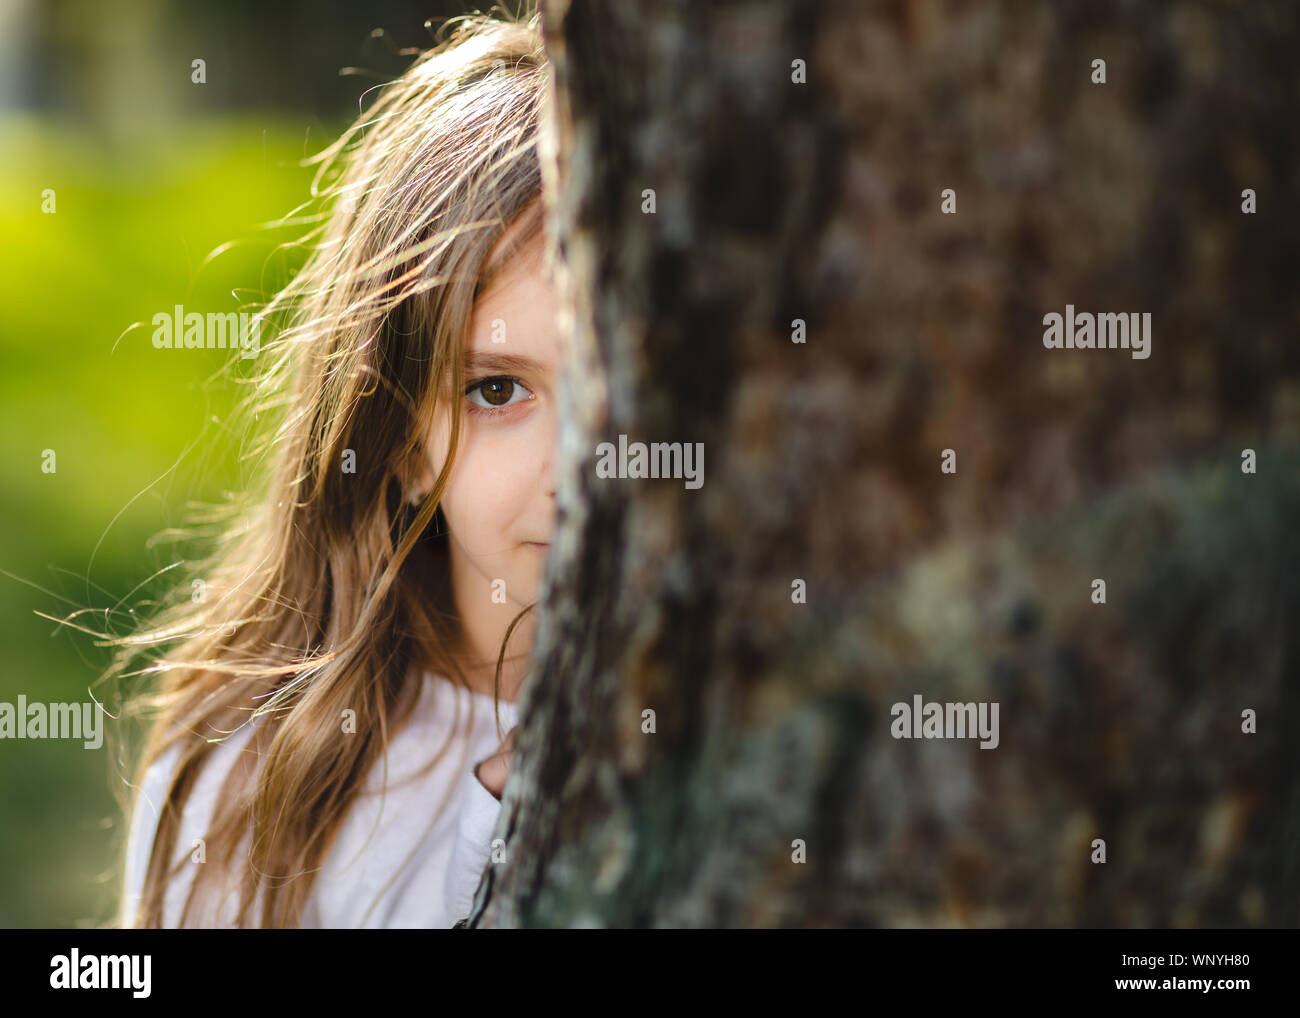 Ragazza giovane di nascondersi dietro l'albero. Ritratto di giovane ragazza dietro la struttura ad albero nel parco. Metà faccia di ragazza dietro la struttura. Foto Stock